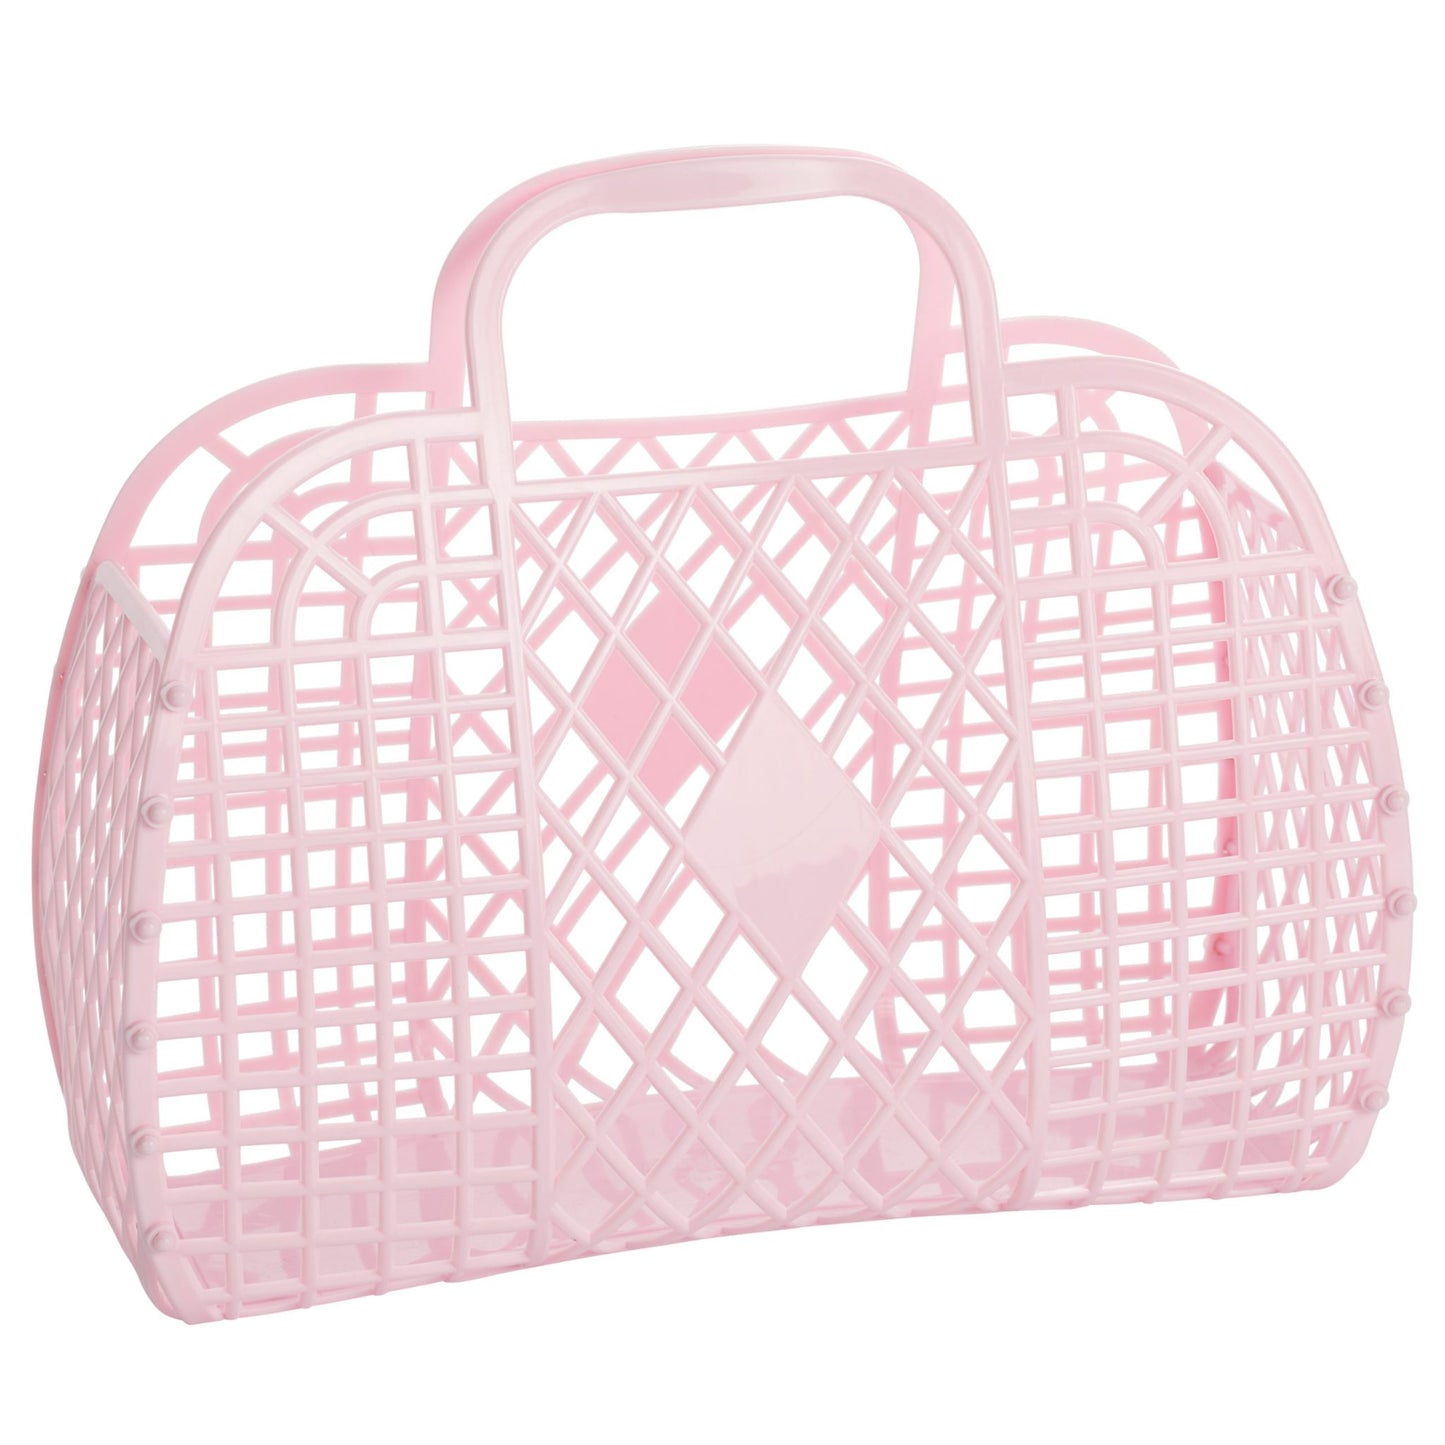 Large Retro Basket - Pink Gifts Sunjellies   